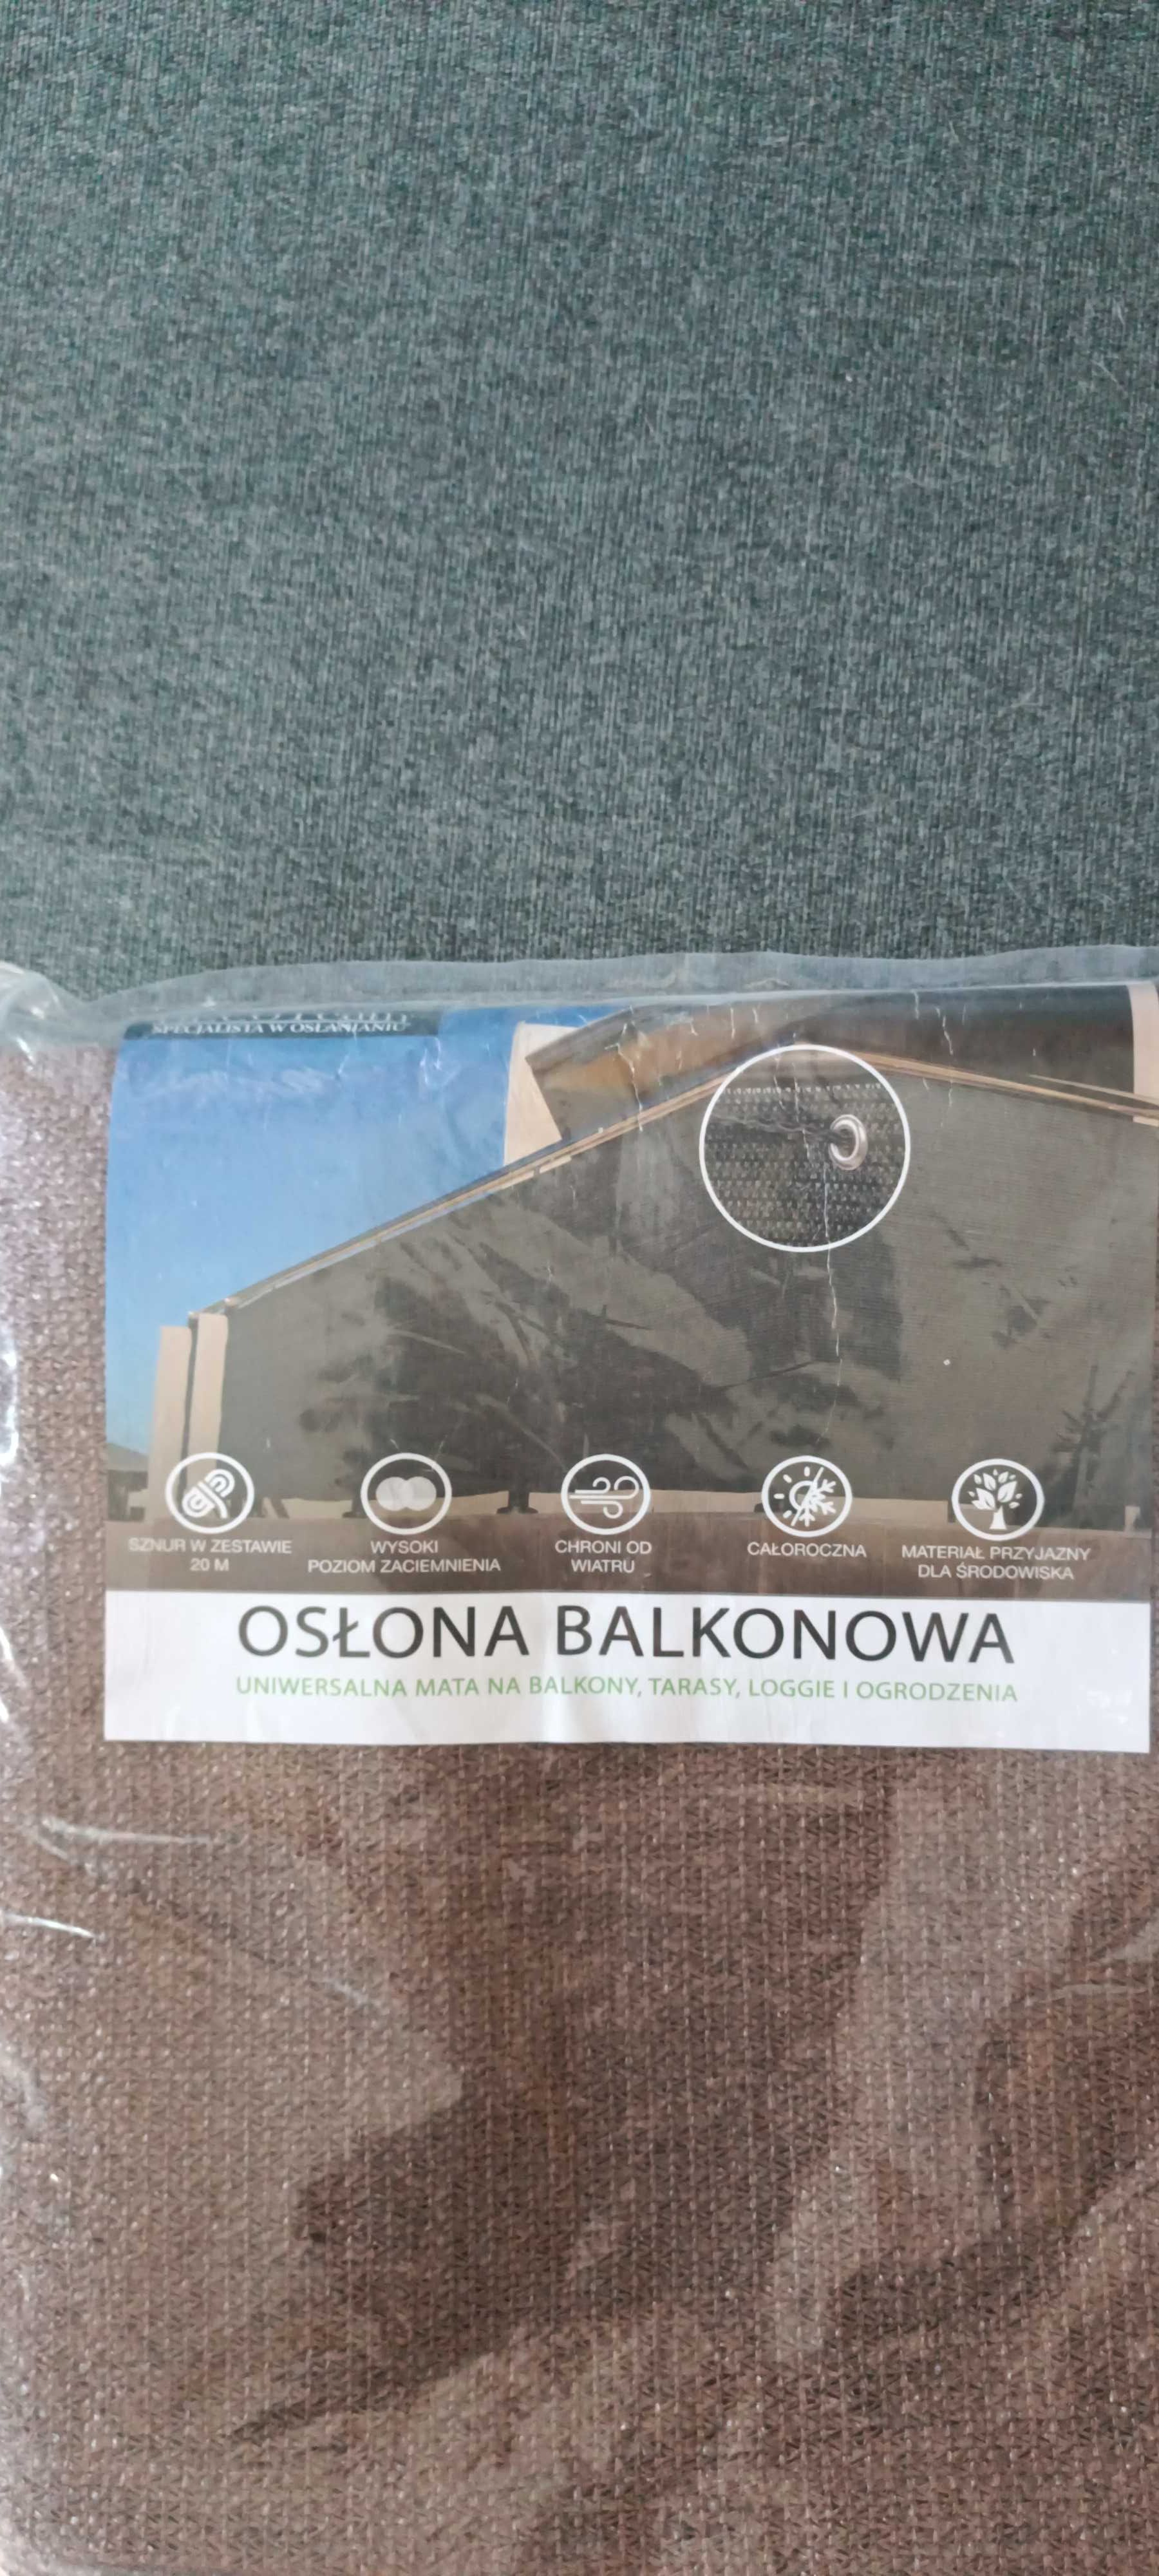 Osłona, siatka cieniująca balkon taras DECOteam. 0,60 x 5m Wysyłka OLX